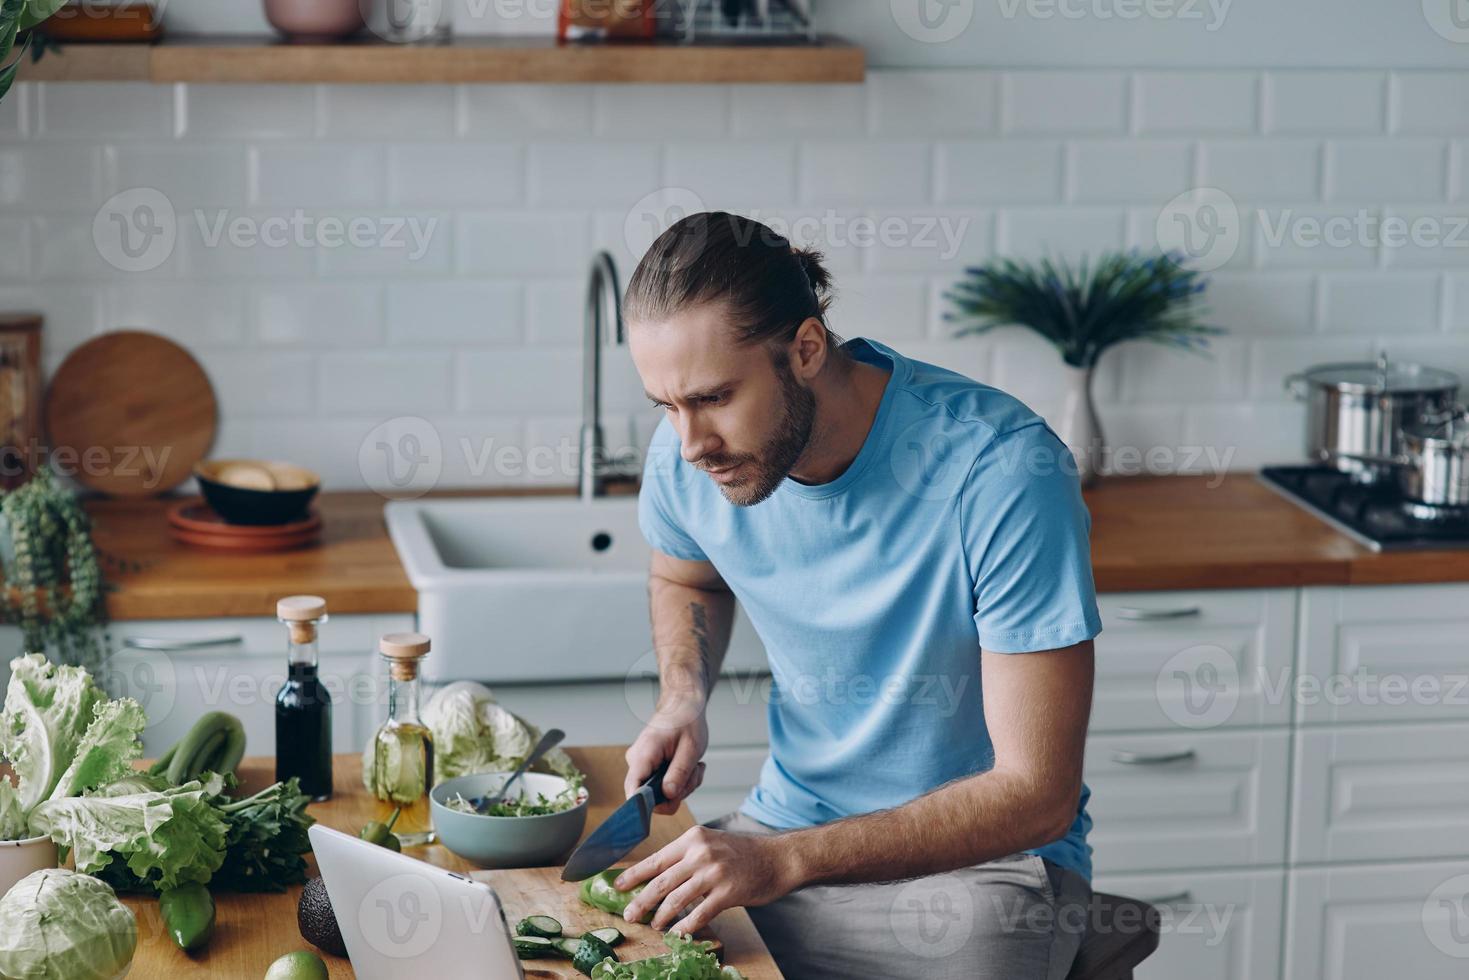 beau jeune homme regardant une tablette numérique tout en préparant la nourriture dans la cuisine domestique photo